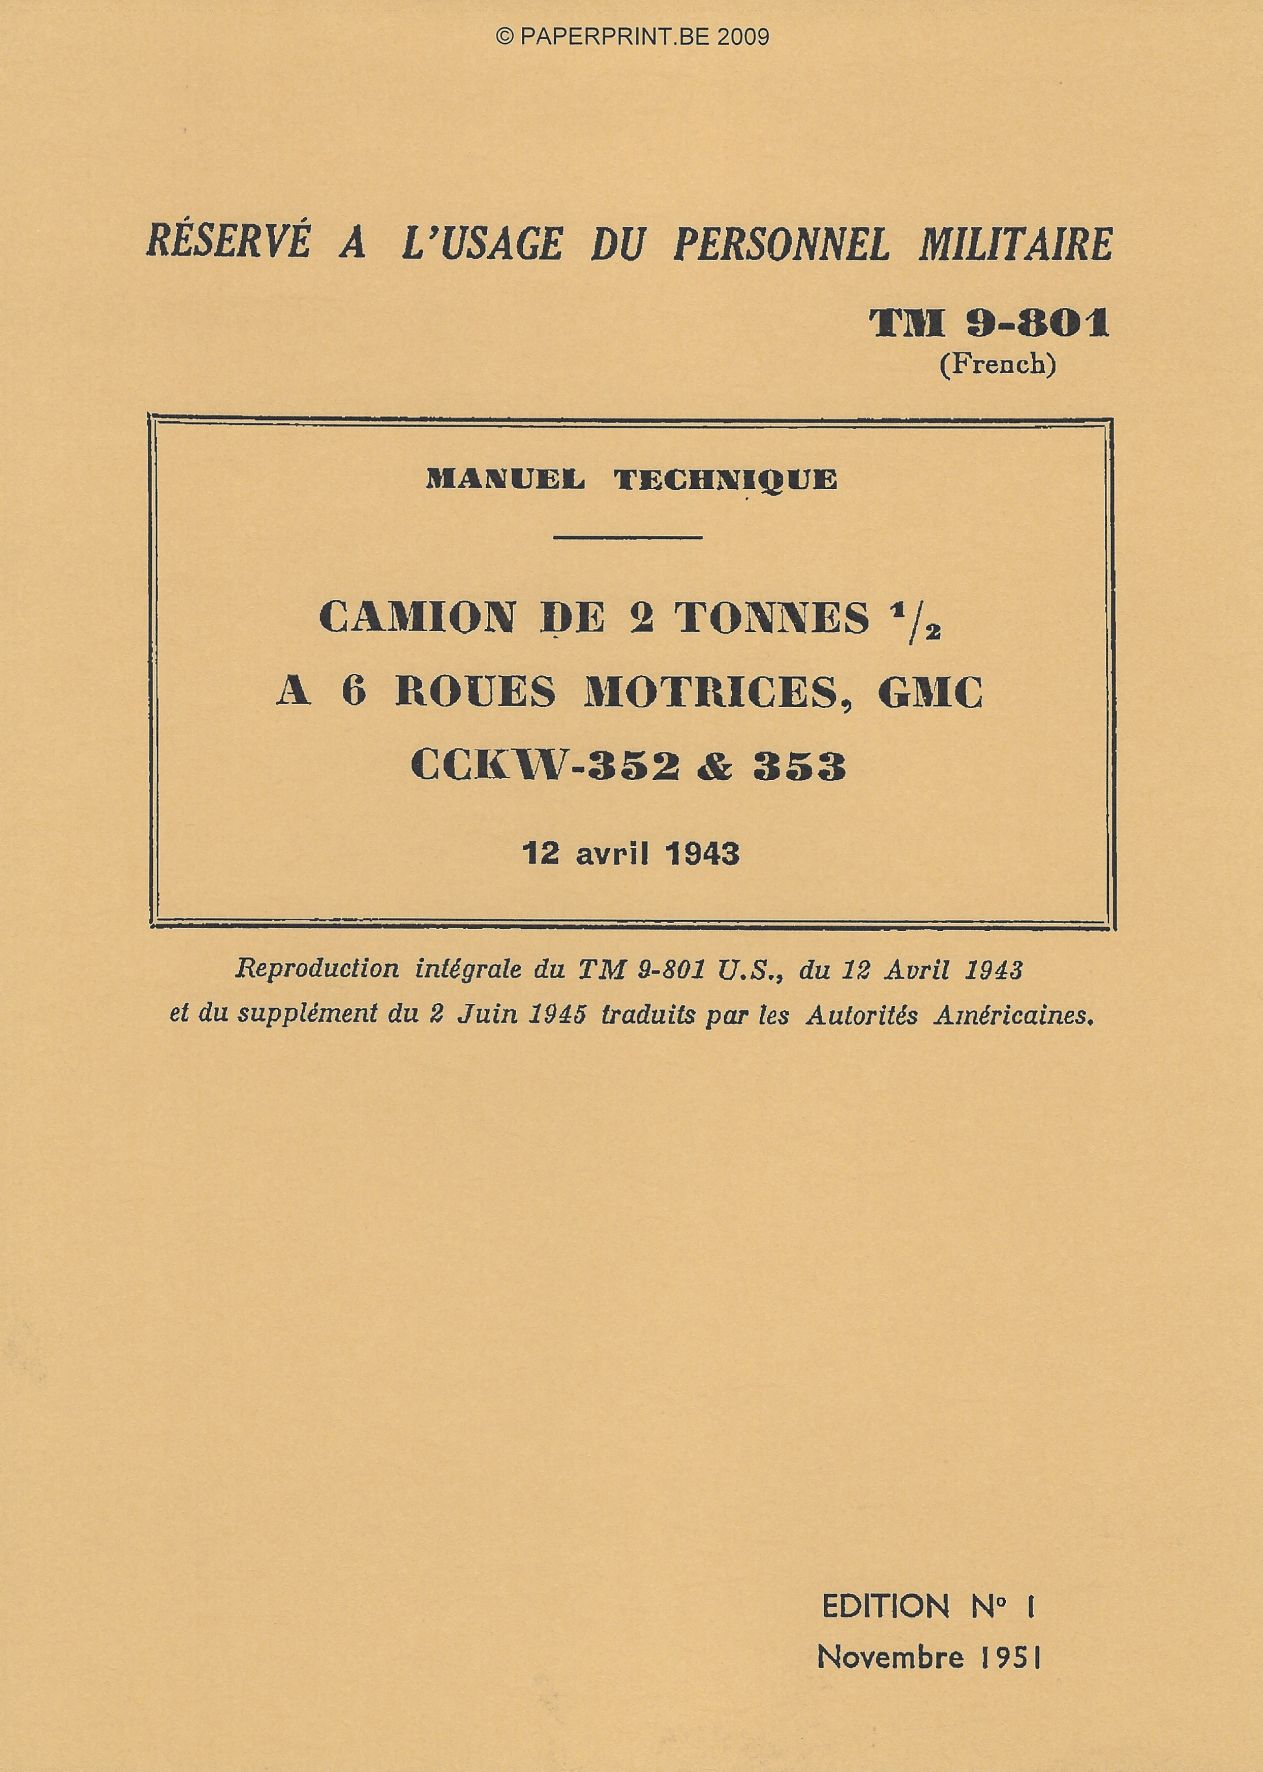 TM 9-801 FR CAMION DE 2 TONNES ½ A 6 ROUES MOTRICES, GMC CCKW-352 & 353